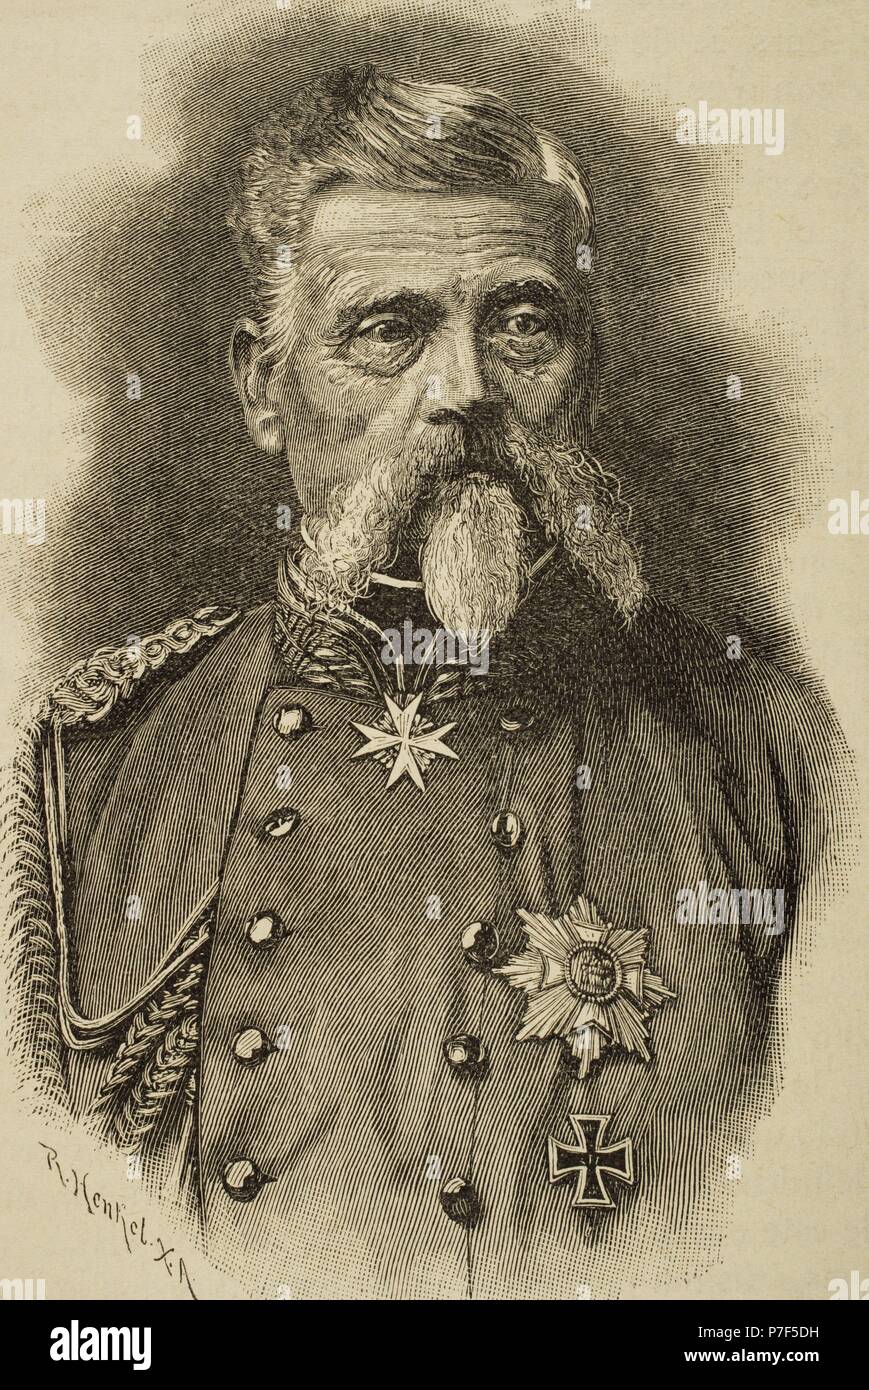 Ludwig Freiherr von Und Zu der Tann-Rathsamhausen (1815-1881). Deutscher general. Kupferstich von R. Henkel in Universalgeschichte, 1885. Stockfoto